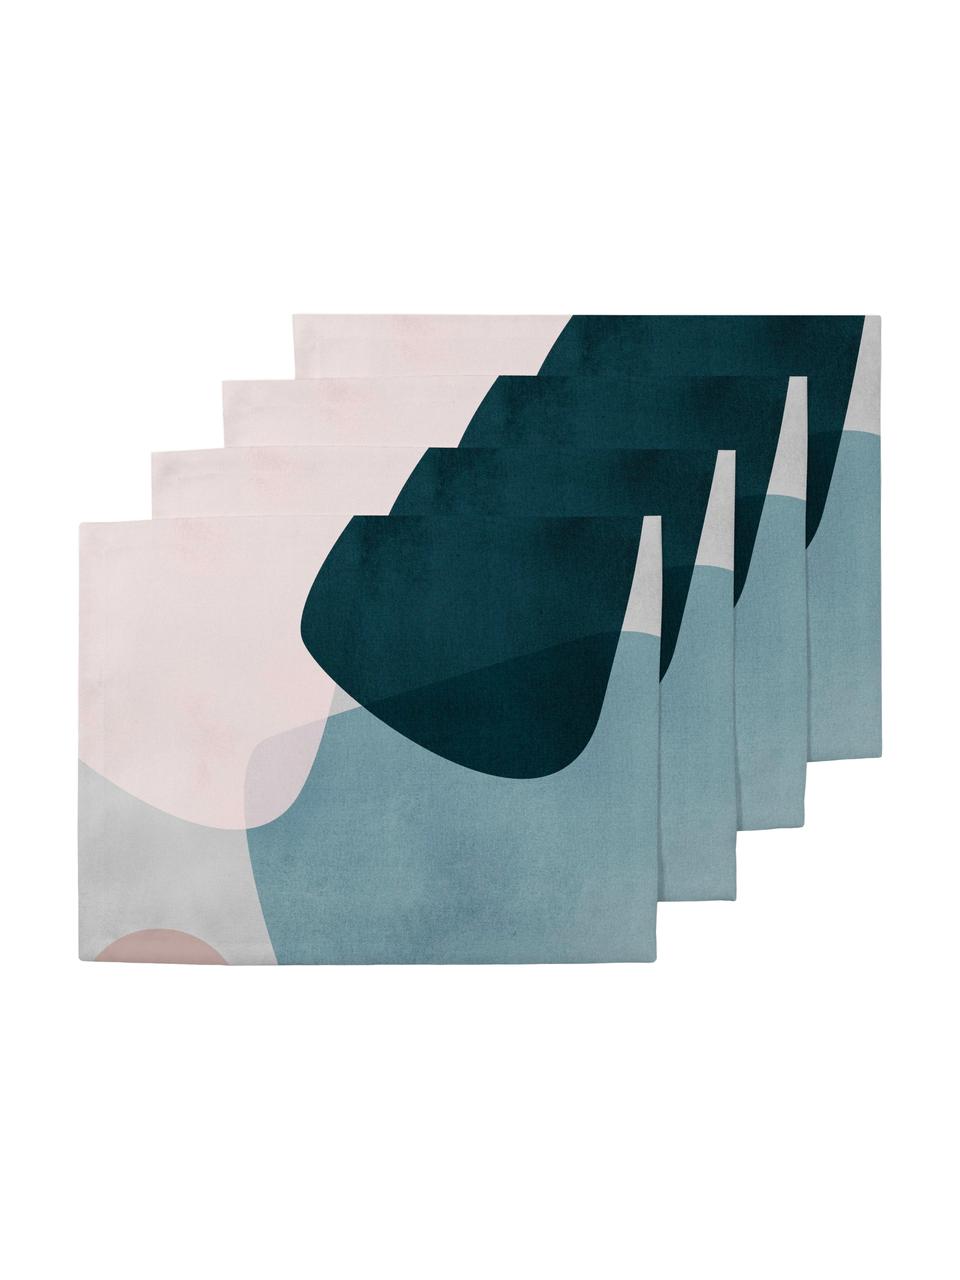 Podkładka Graphic, 4 szt., Poliester, Ciemny niebieski, niebieski, szary, blady różowy, S 35 x D 45 cm